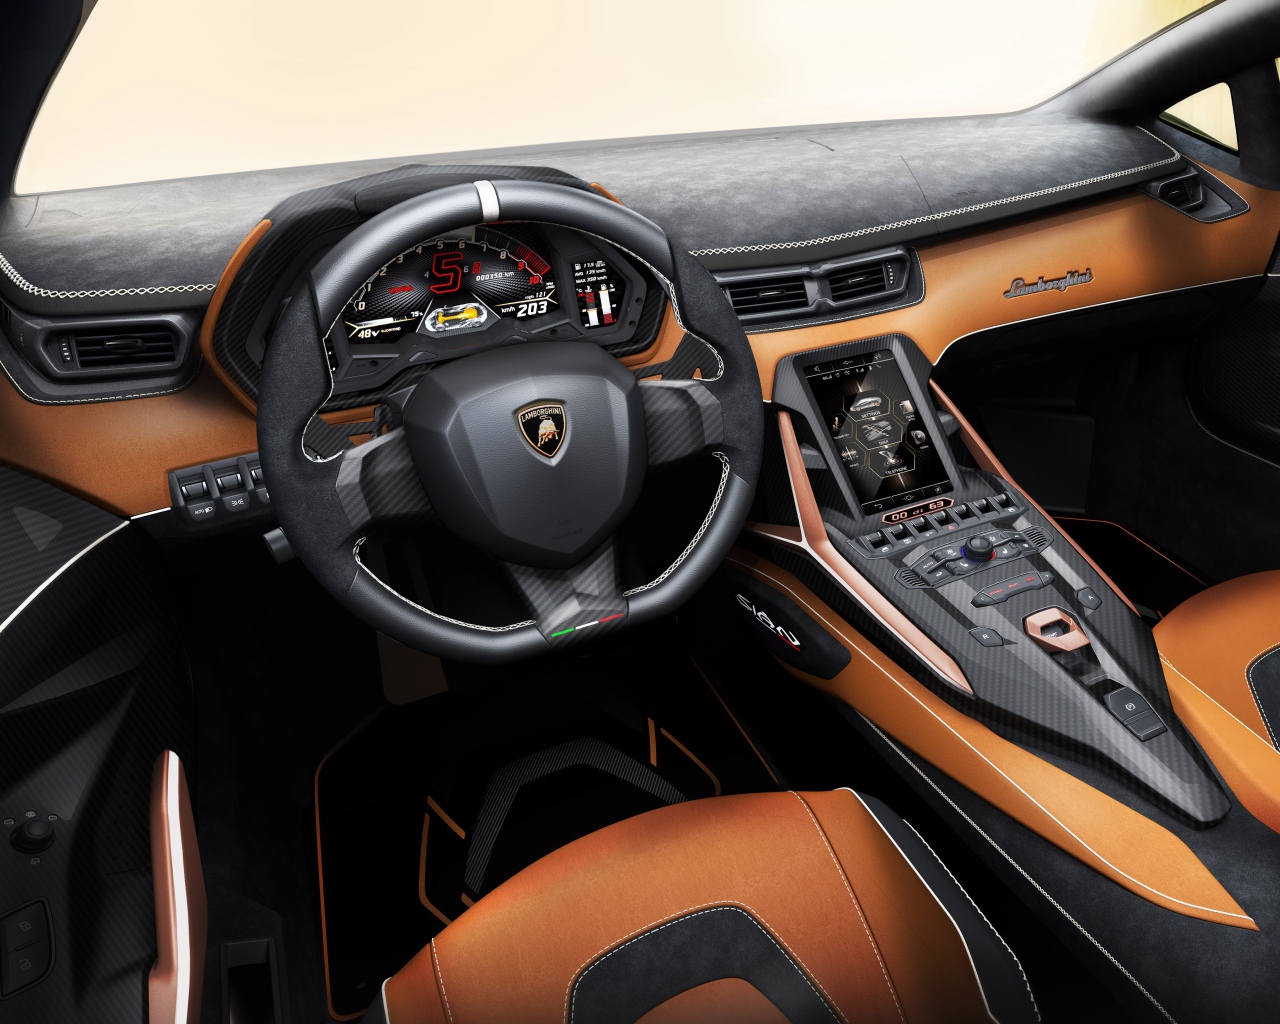 Стильный кожаный салон автомобиля Lamborghini Sian 2019 года